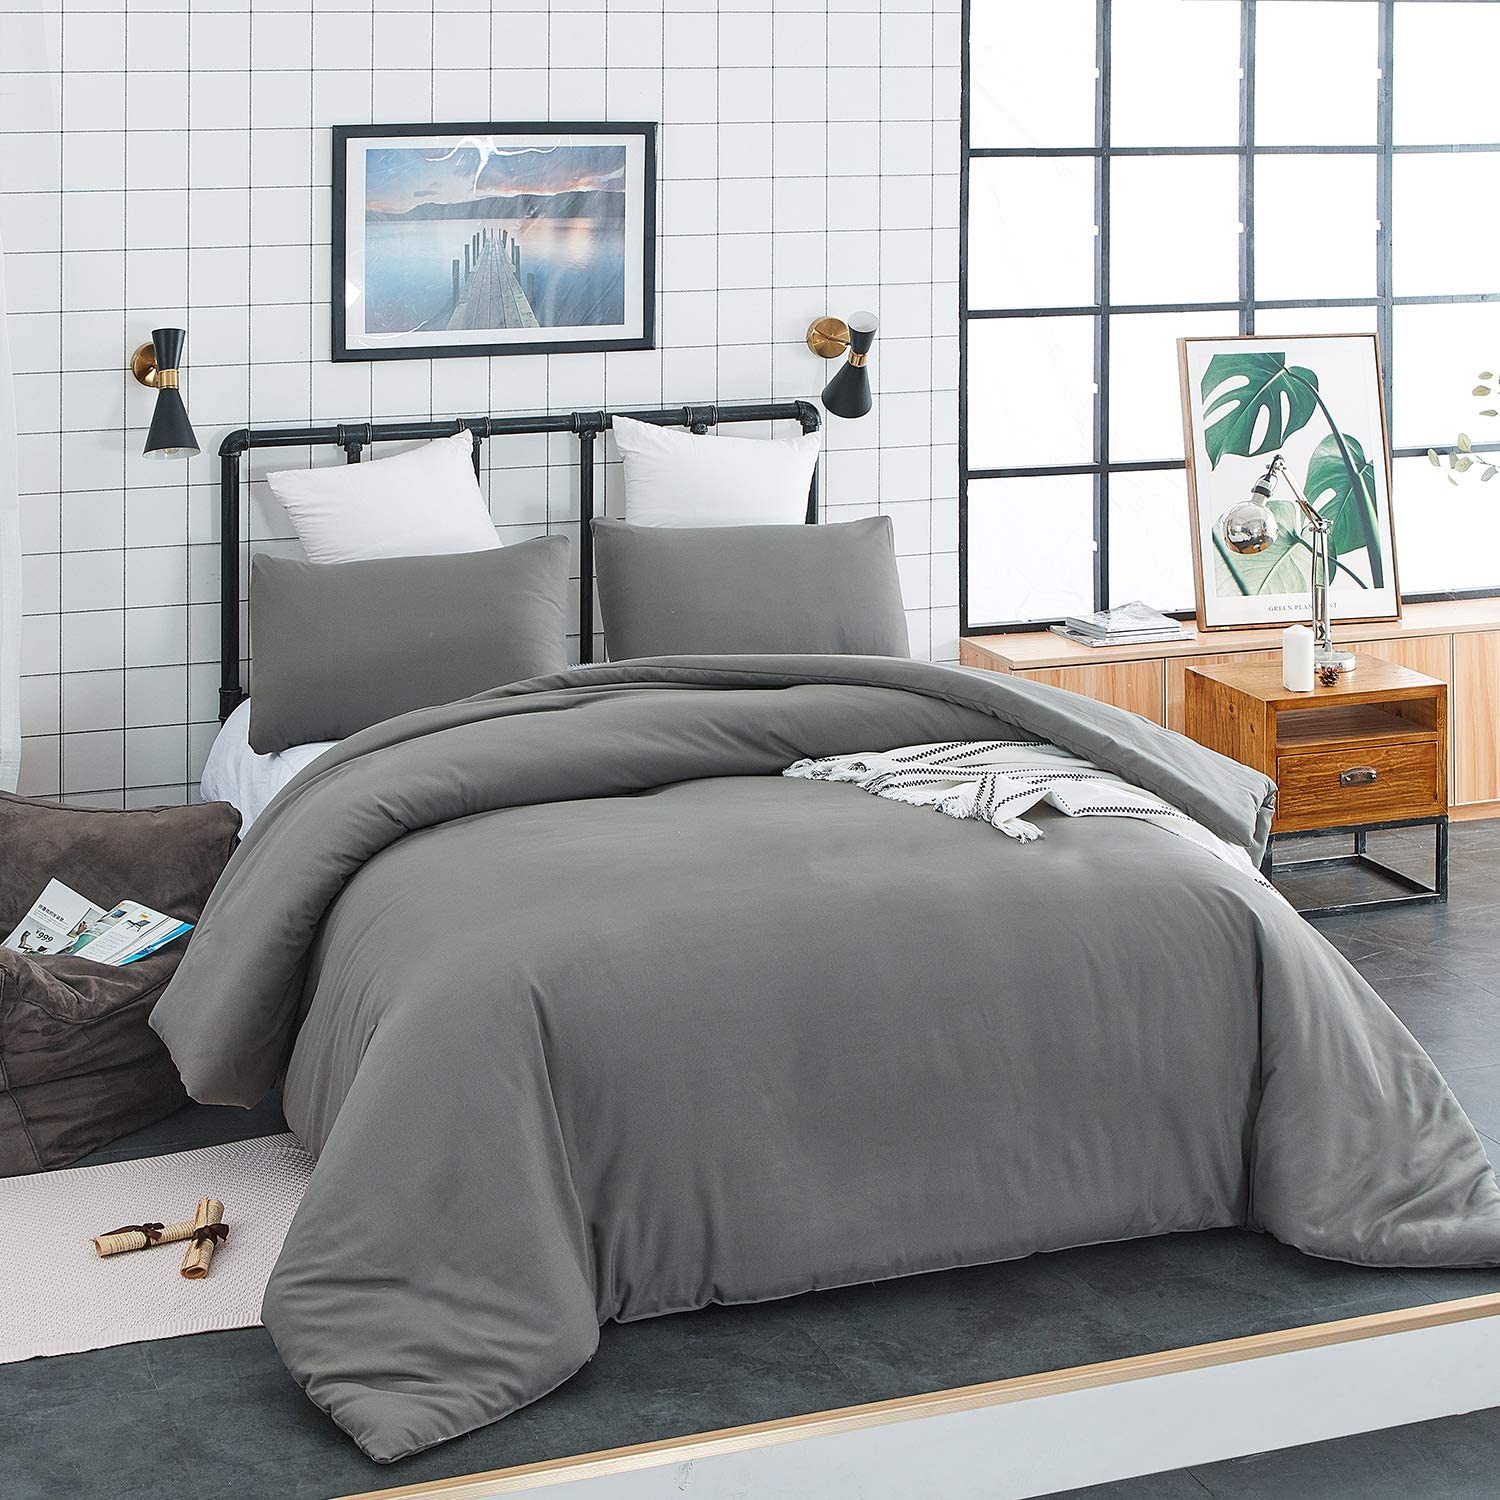 Jumeey Grey Comforter Set Full Size Dark Grey Comforter Queen Solid ...